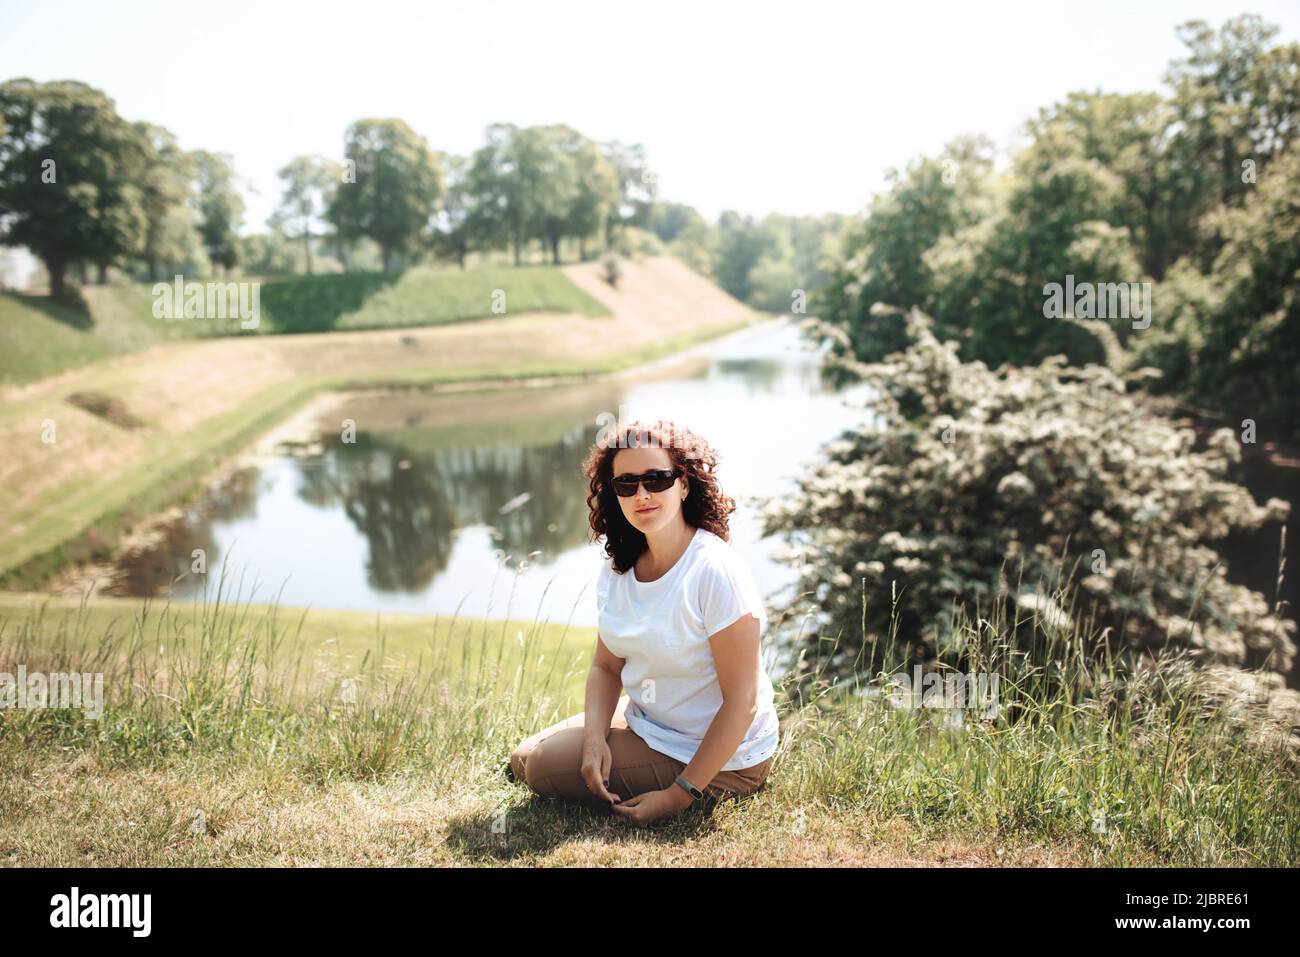 Die Reisende sitzt auf grünem Gras und sieht gerade aus. Die Frau genießt die Natur und sitzt am Ufer des Grabens rund um das Schloss Castellet. Festung aus dem 17. Jahrhundert mit Museum in Kopenhagen, Dänemark. Weichfokus Stockfoto